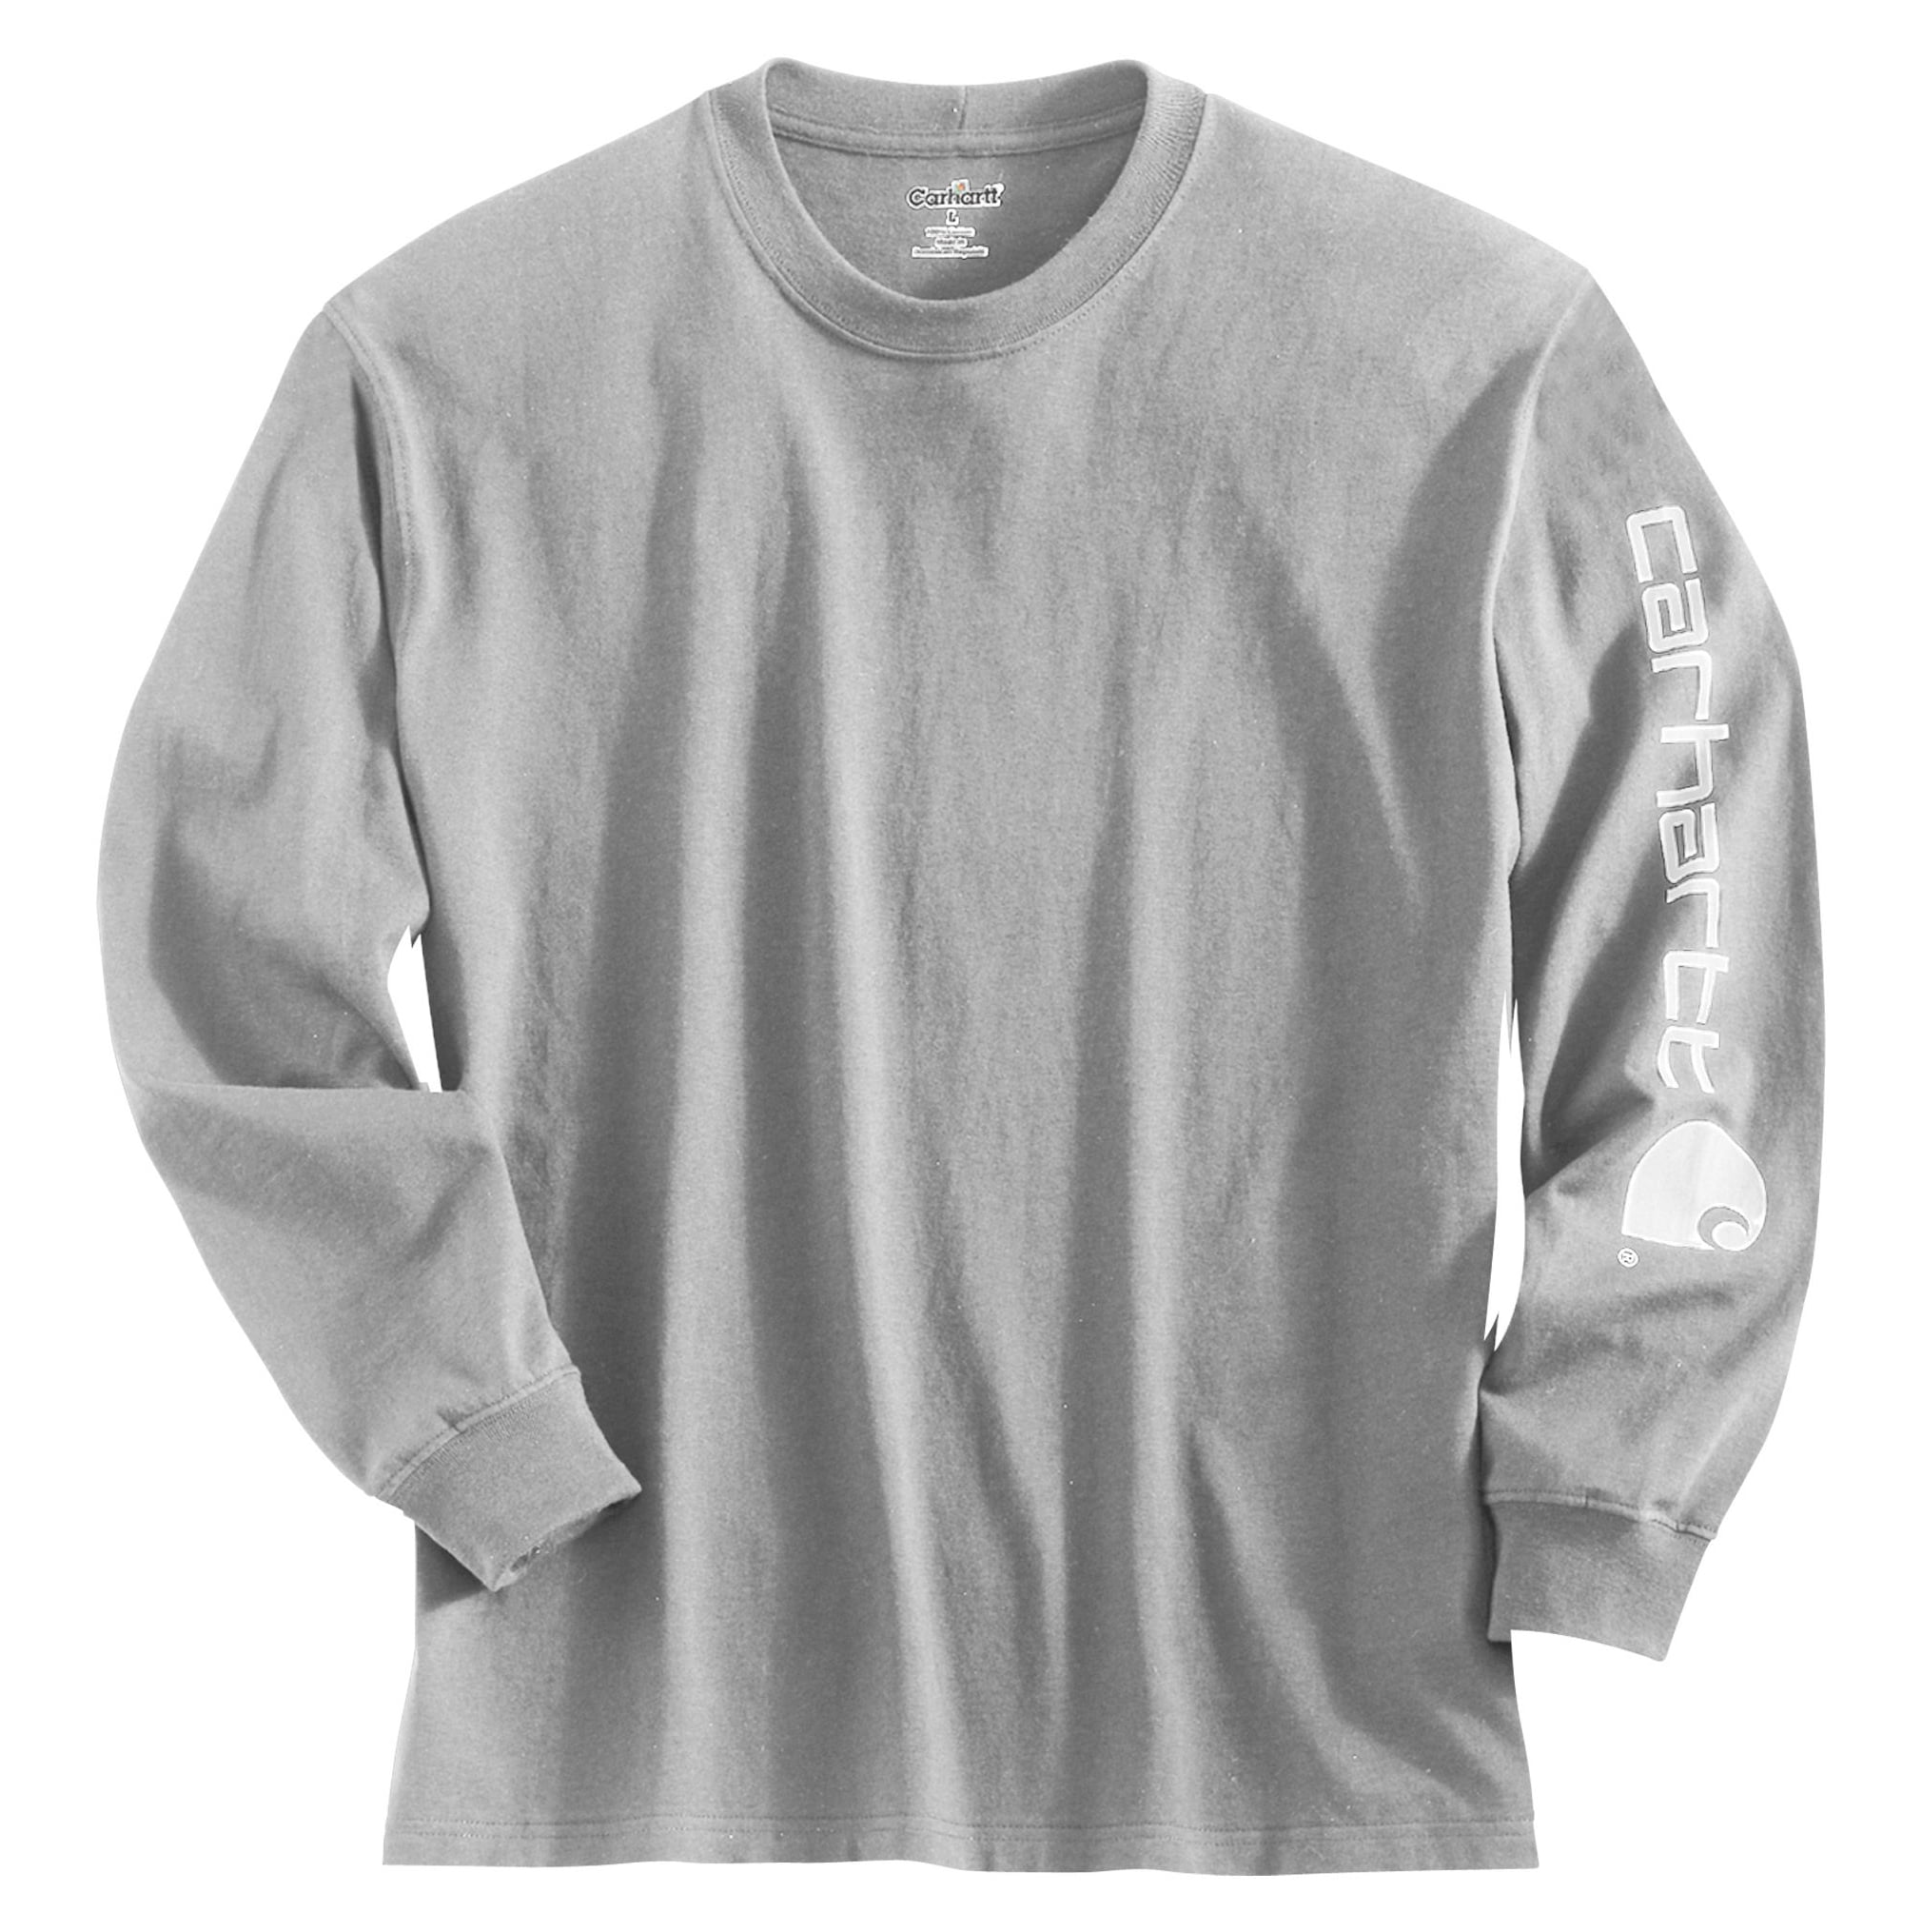 Carhartt - Carhartt Men's Signature Sleeve Long Sleeve T-Shirt - Walmart.com - Walmart.com